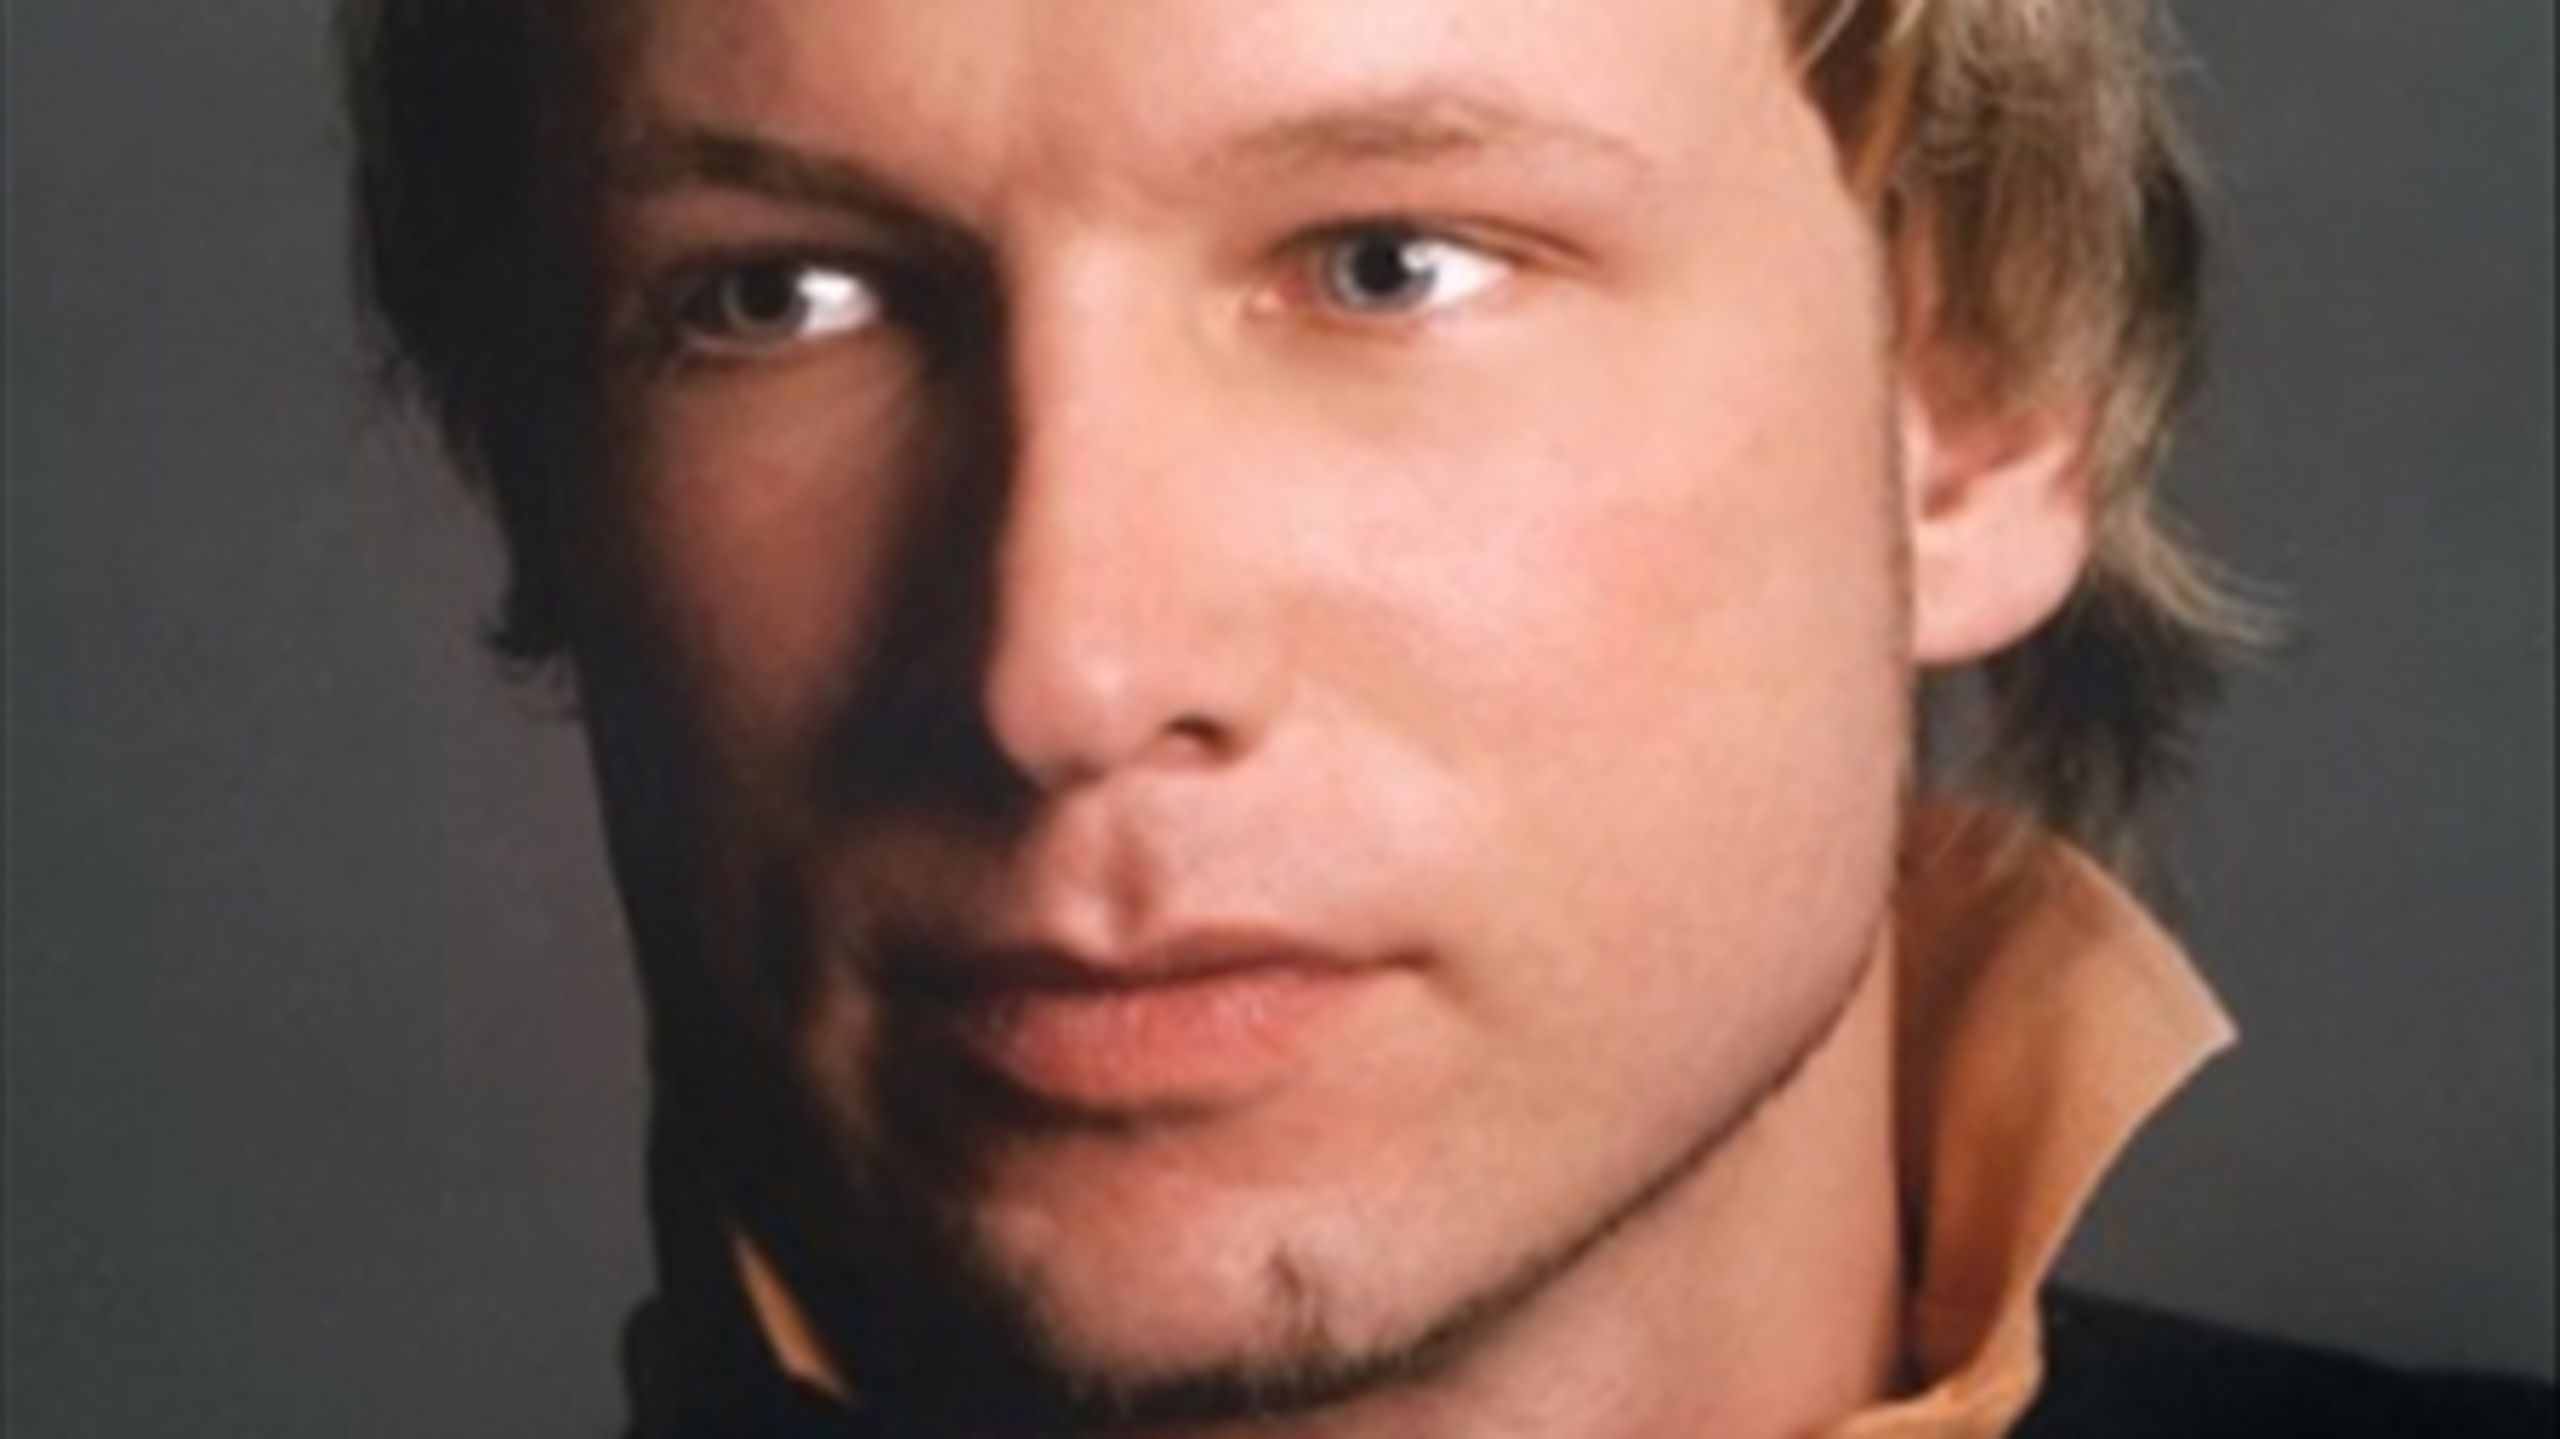 Den 32-årige norske statsborger Anders Behring Breivik er anholdt og sigtet for begge terror-forbrydelser fredag i Norge, hvor op mod 100 personer foreløbig menes at have mistet livet. Han har forbindelser til et højreekstremis­tisk miljø i det sydøstlige Norge og har været aktiv på flere islamfjendtlige internetsider.